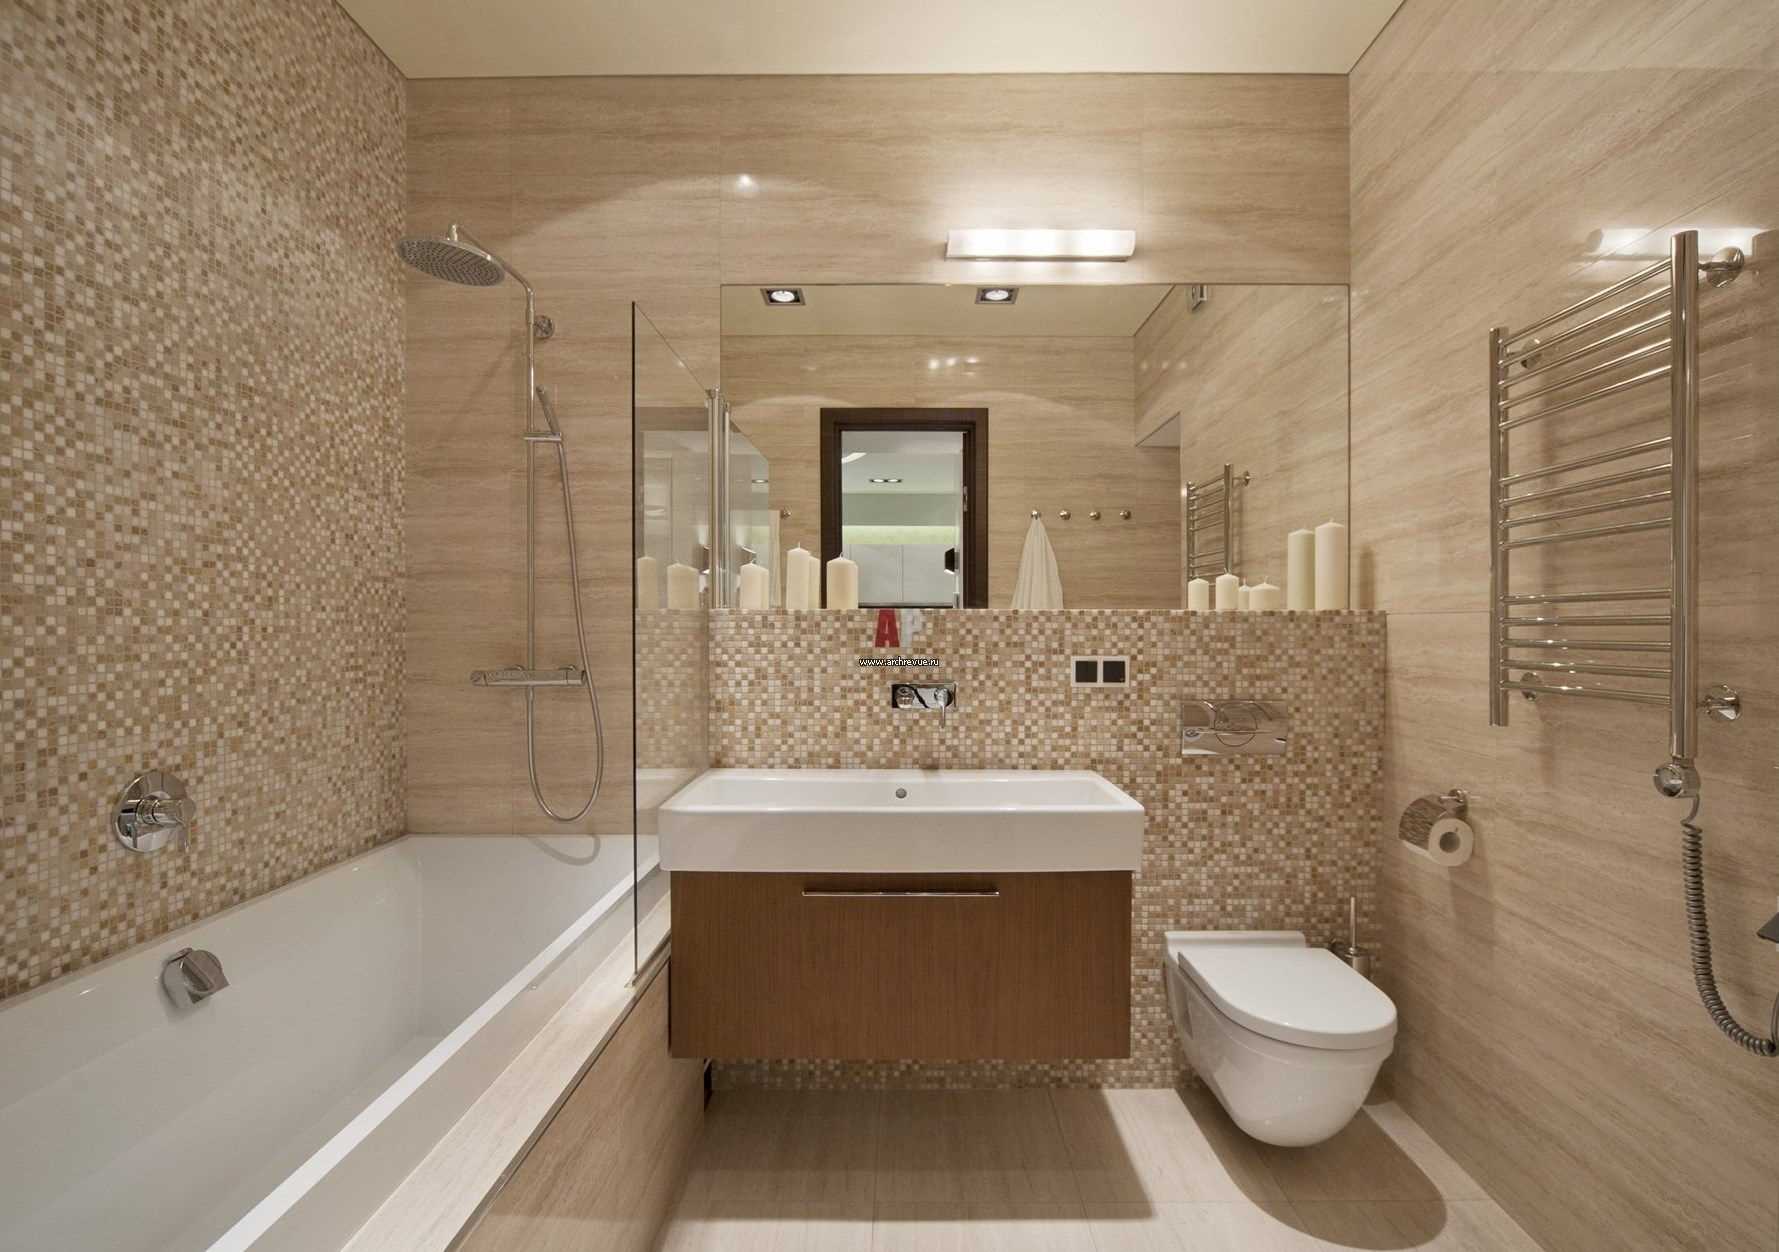 versie van het lichte interieur van de badkamer 2017